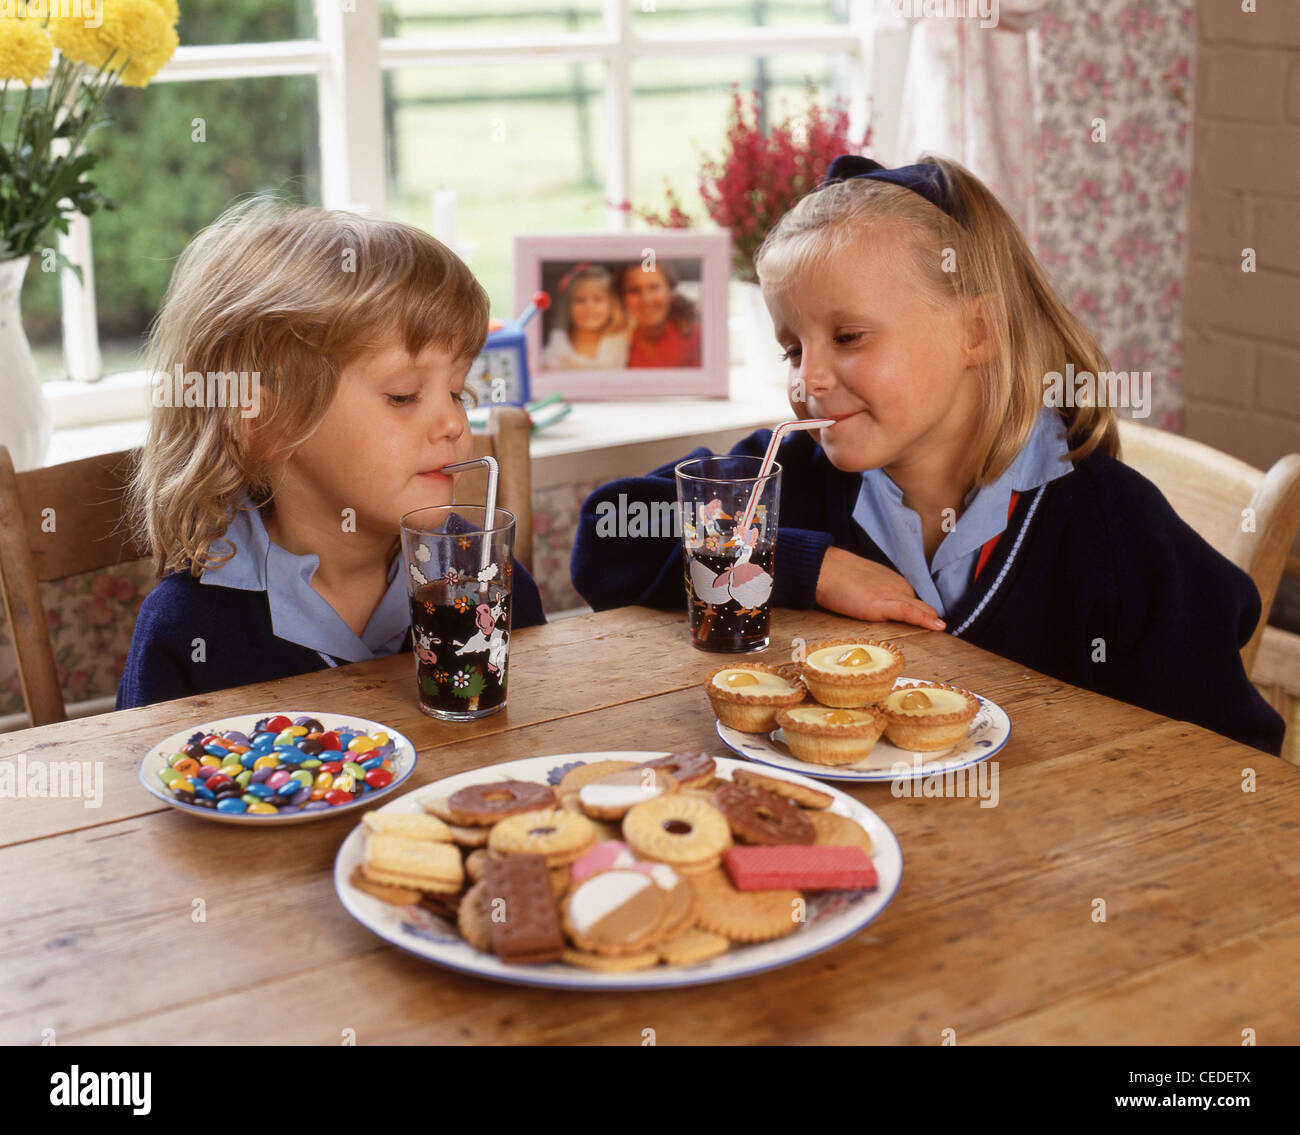 Hermanas comer galletas y beber refrescos, Berkshire, Inglaterra, Reino Unido Foto de stock